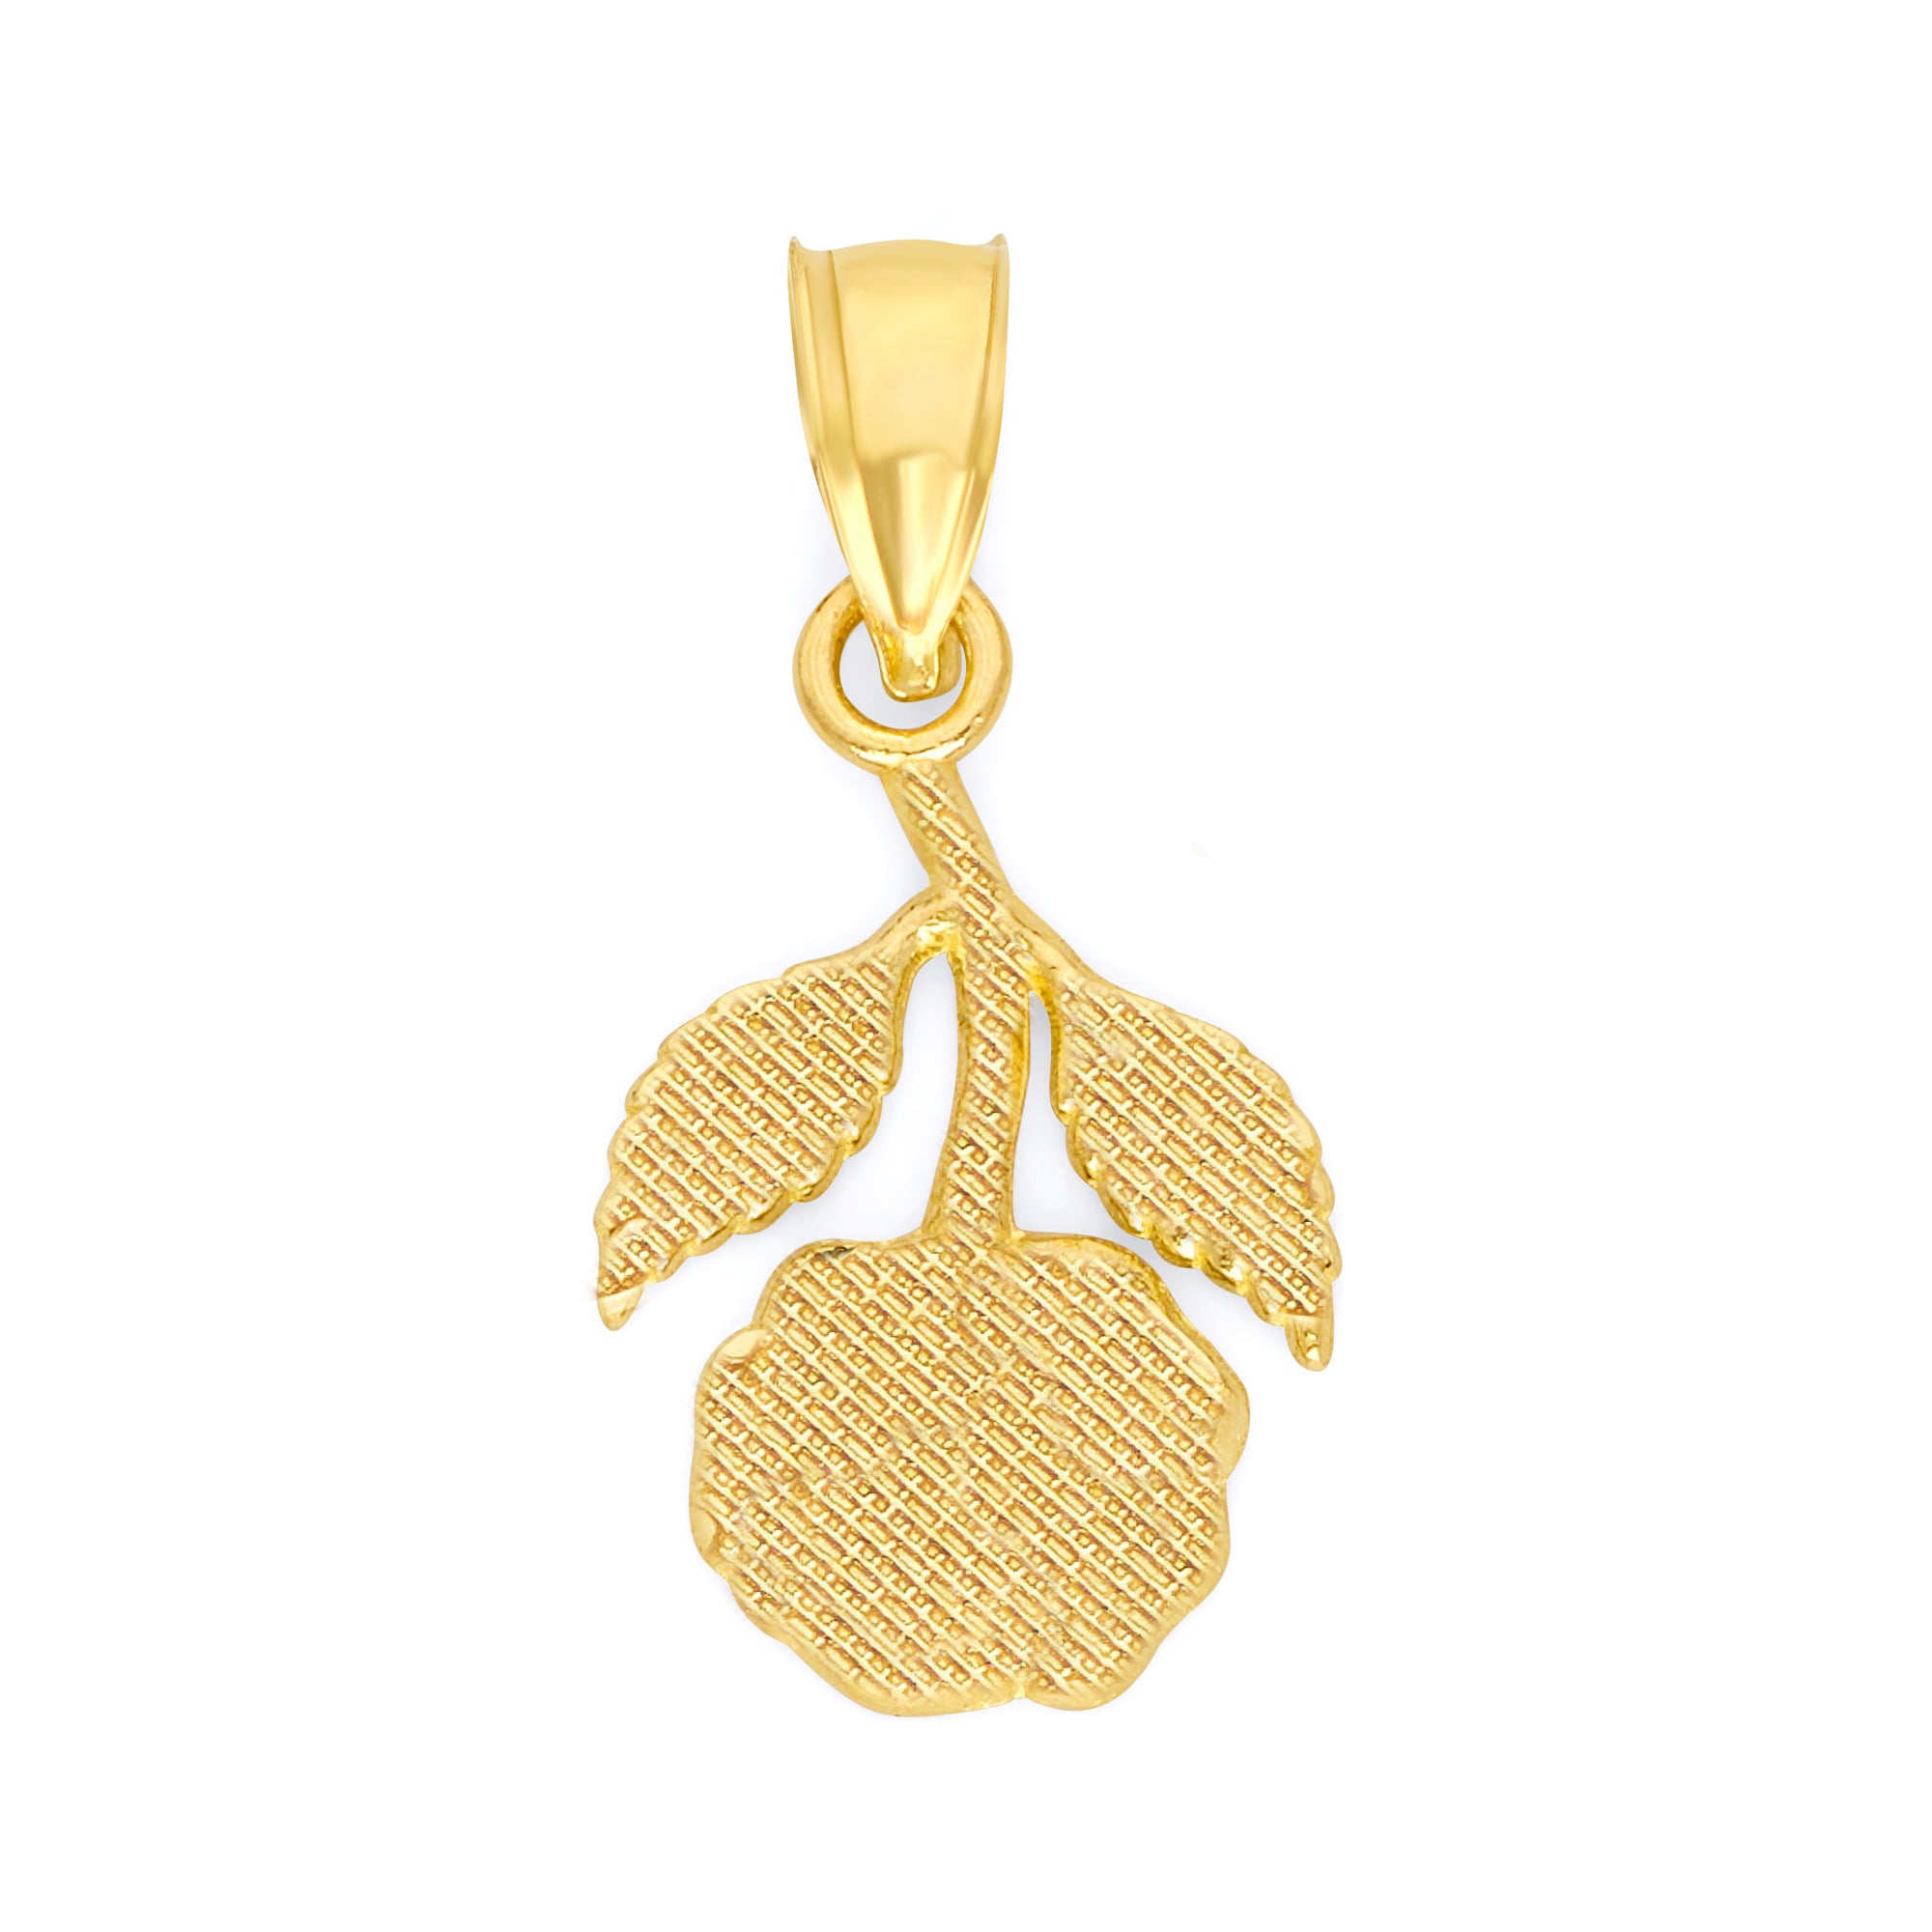 Solid Gold Hanging Rose Pendant - 10k or 14k